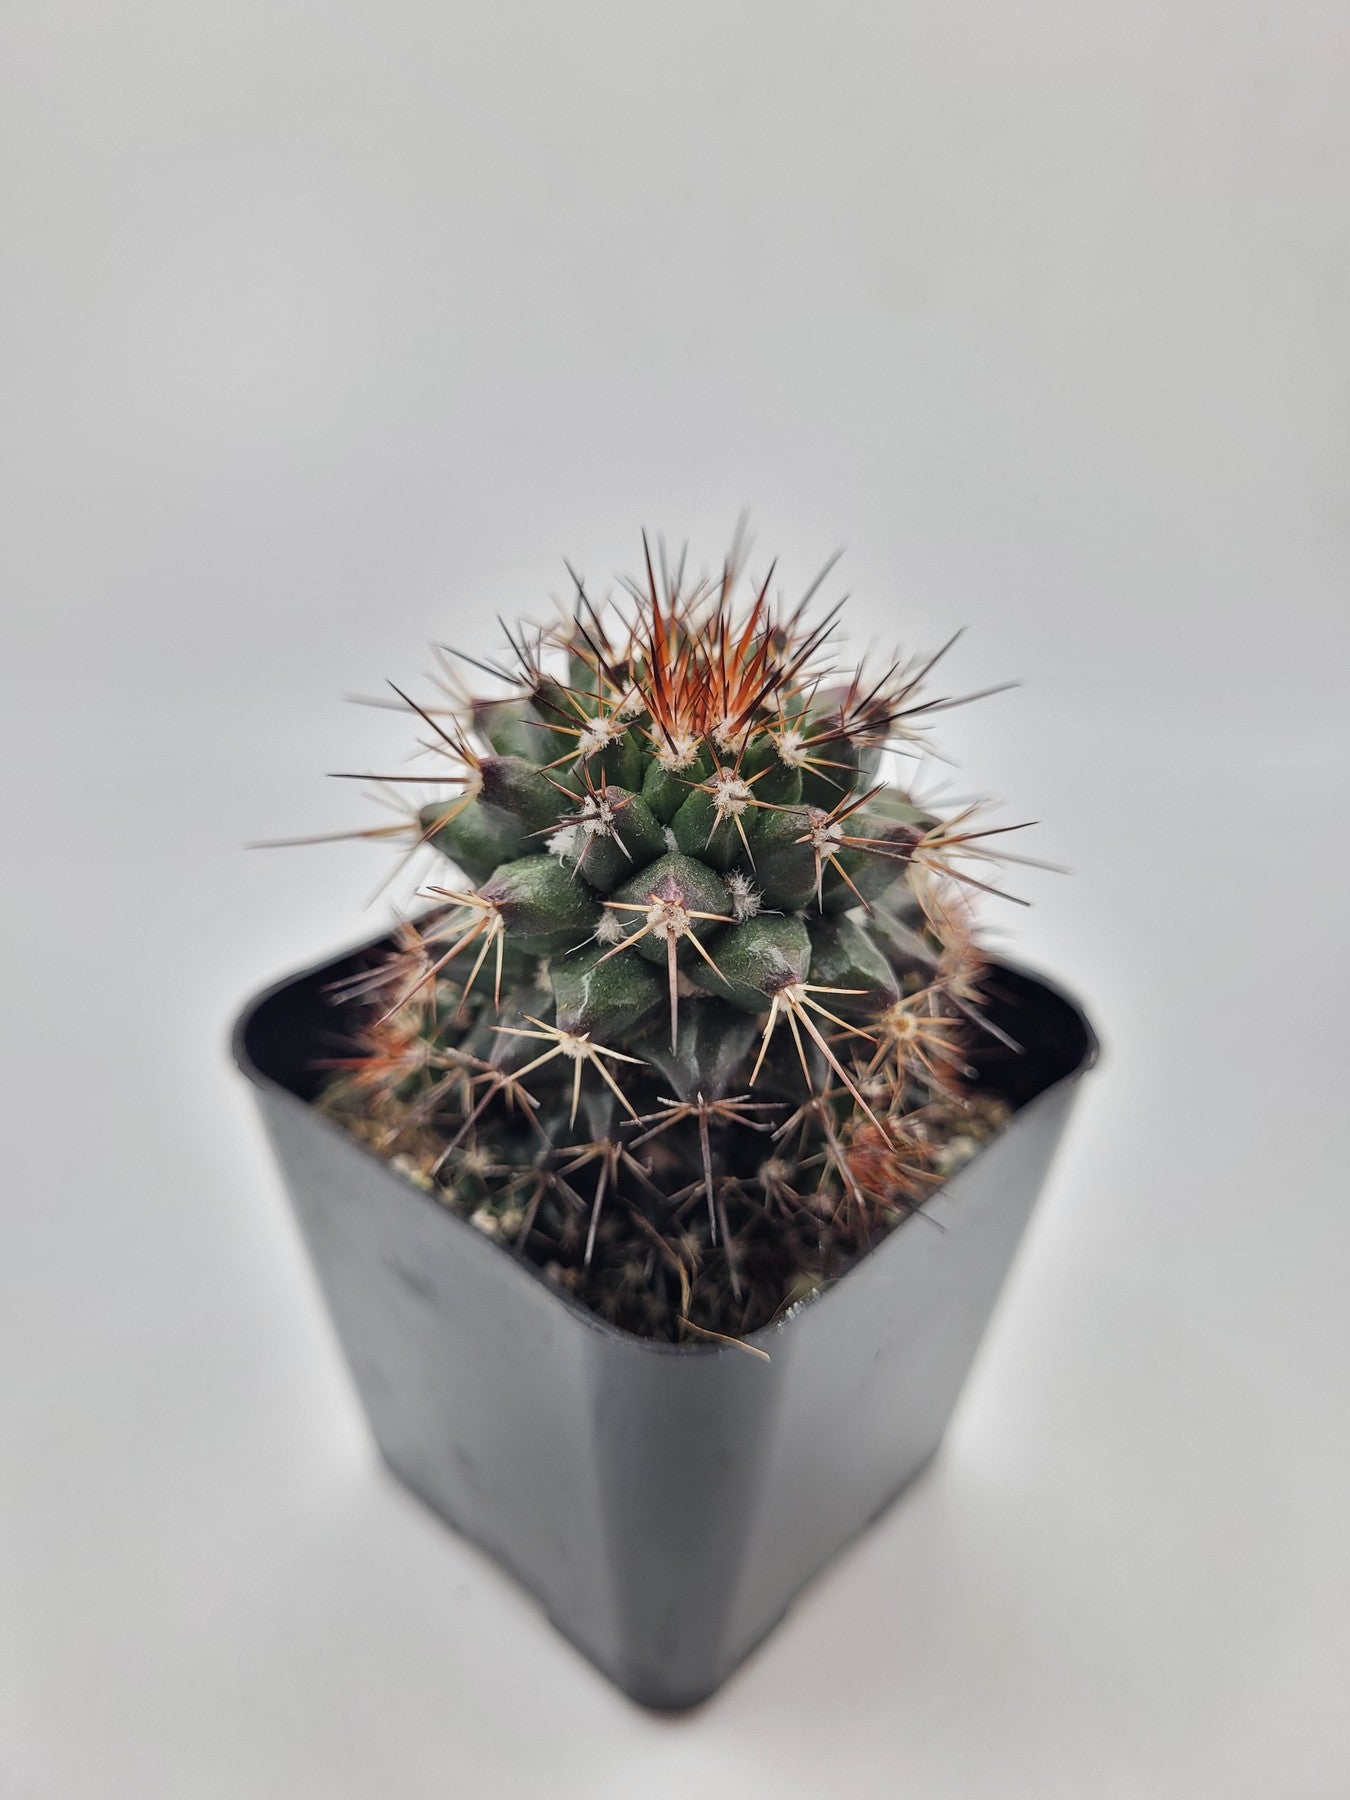 #39c 2" Mammillaria Tesopacensis-Cactus - Small - Exact Type-The Succulent Source